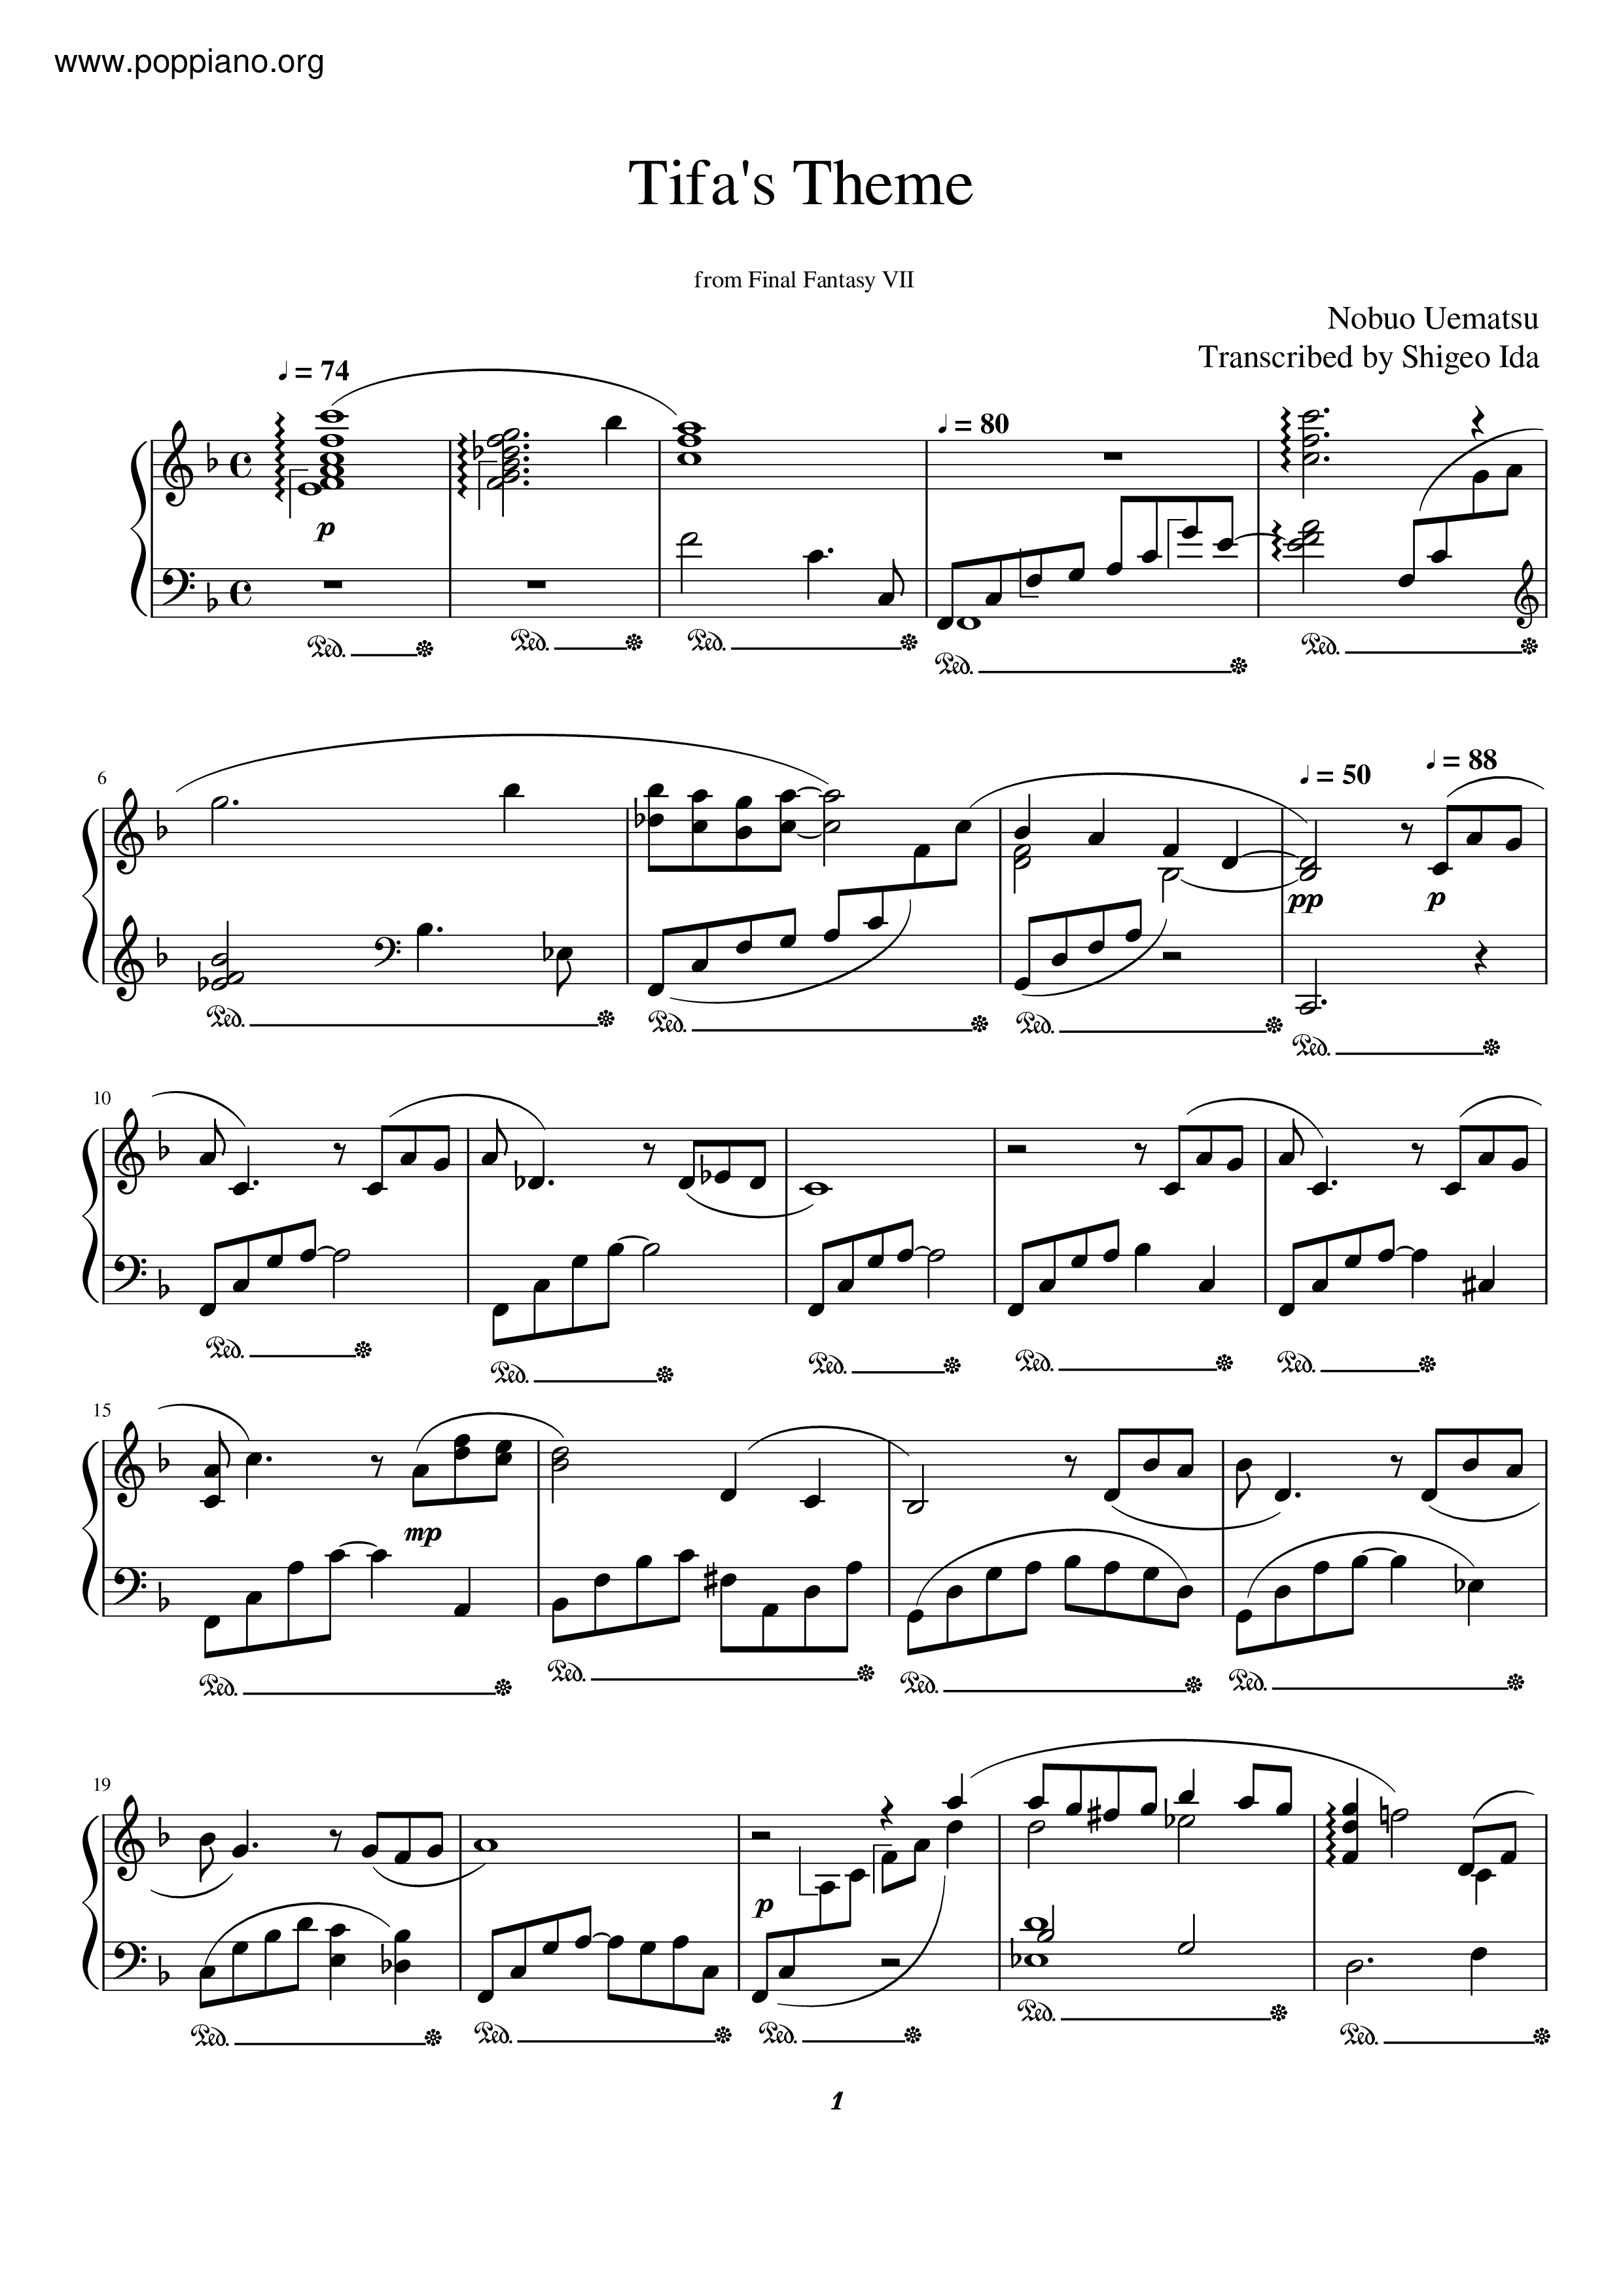 Tifa's Theme Score